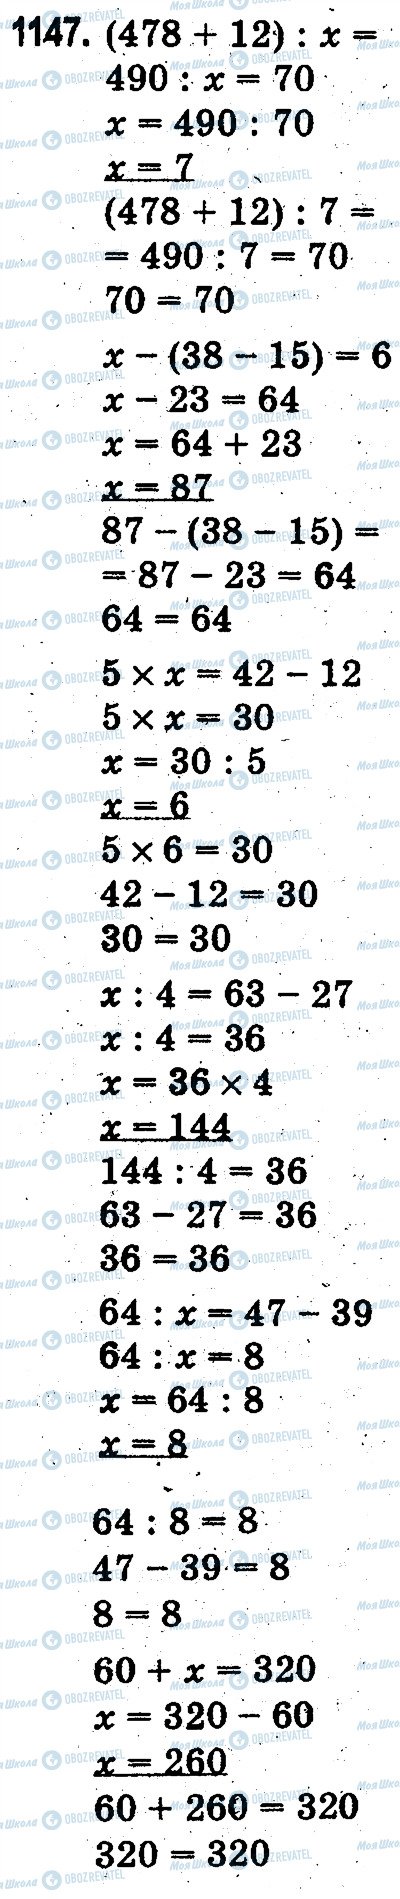 ГДЗ Математика 3 класс страница 1147